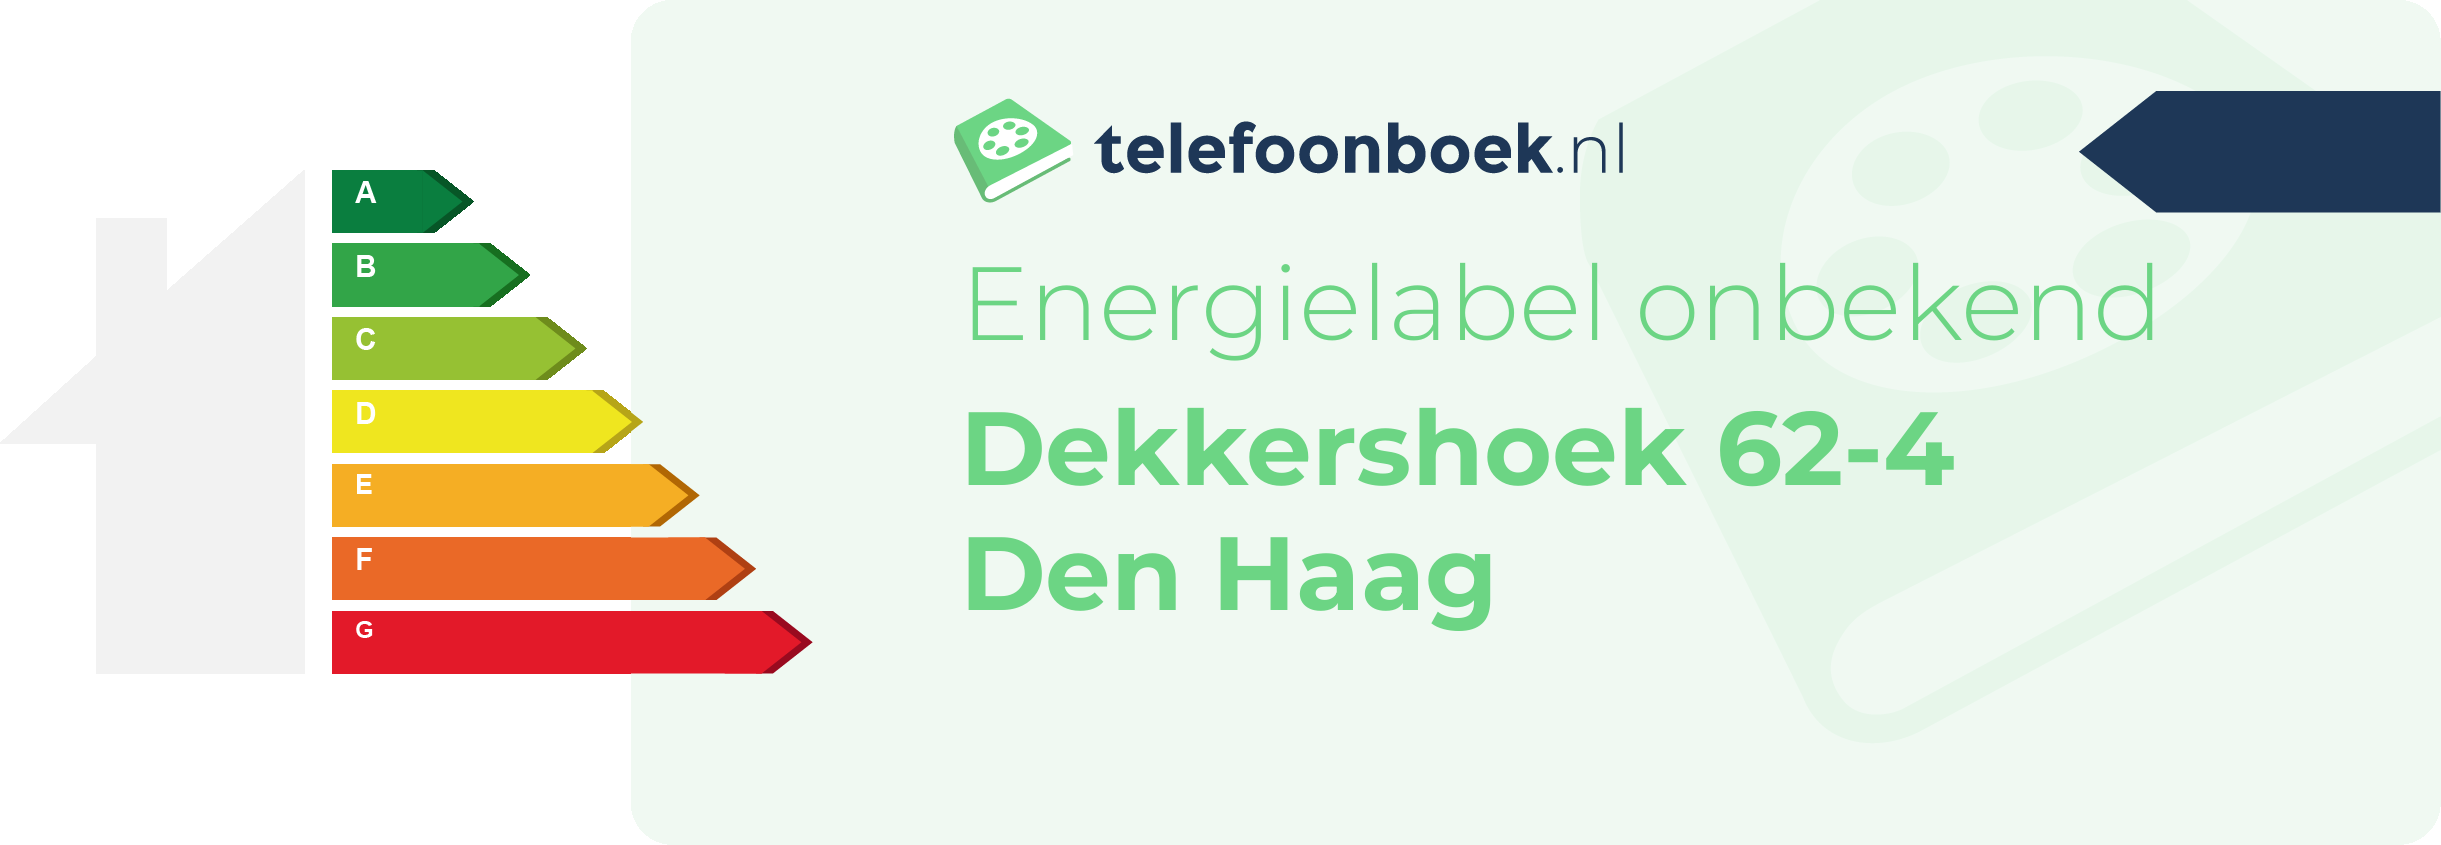 Energielabel Dekkershoek 62-4 Den Haag